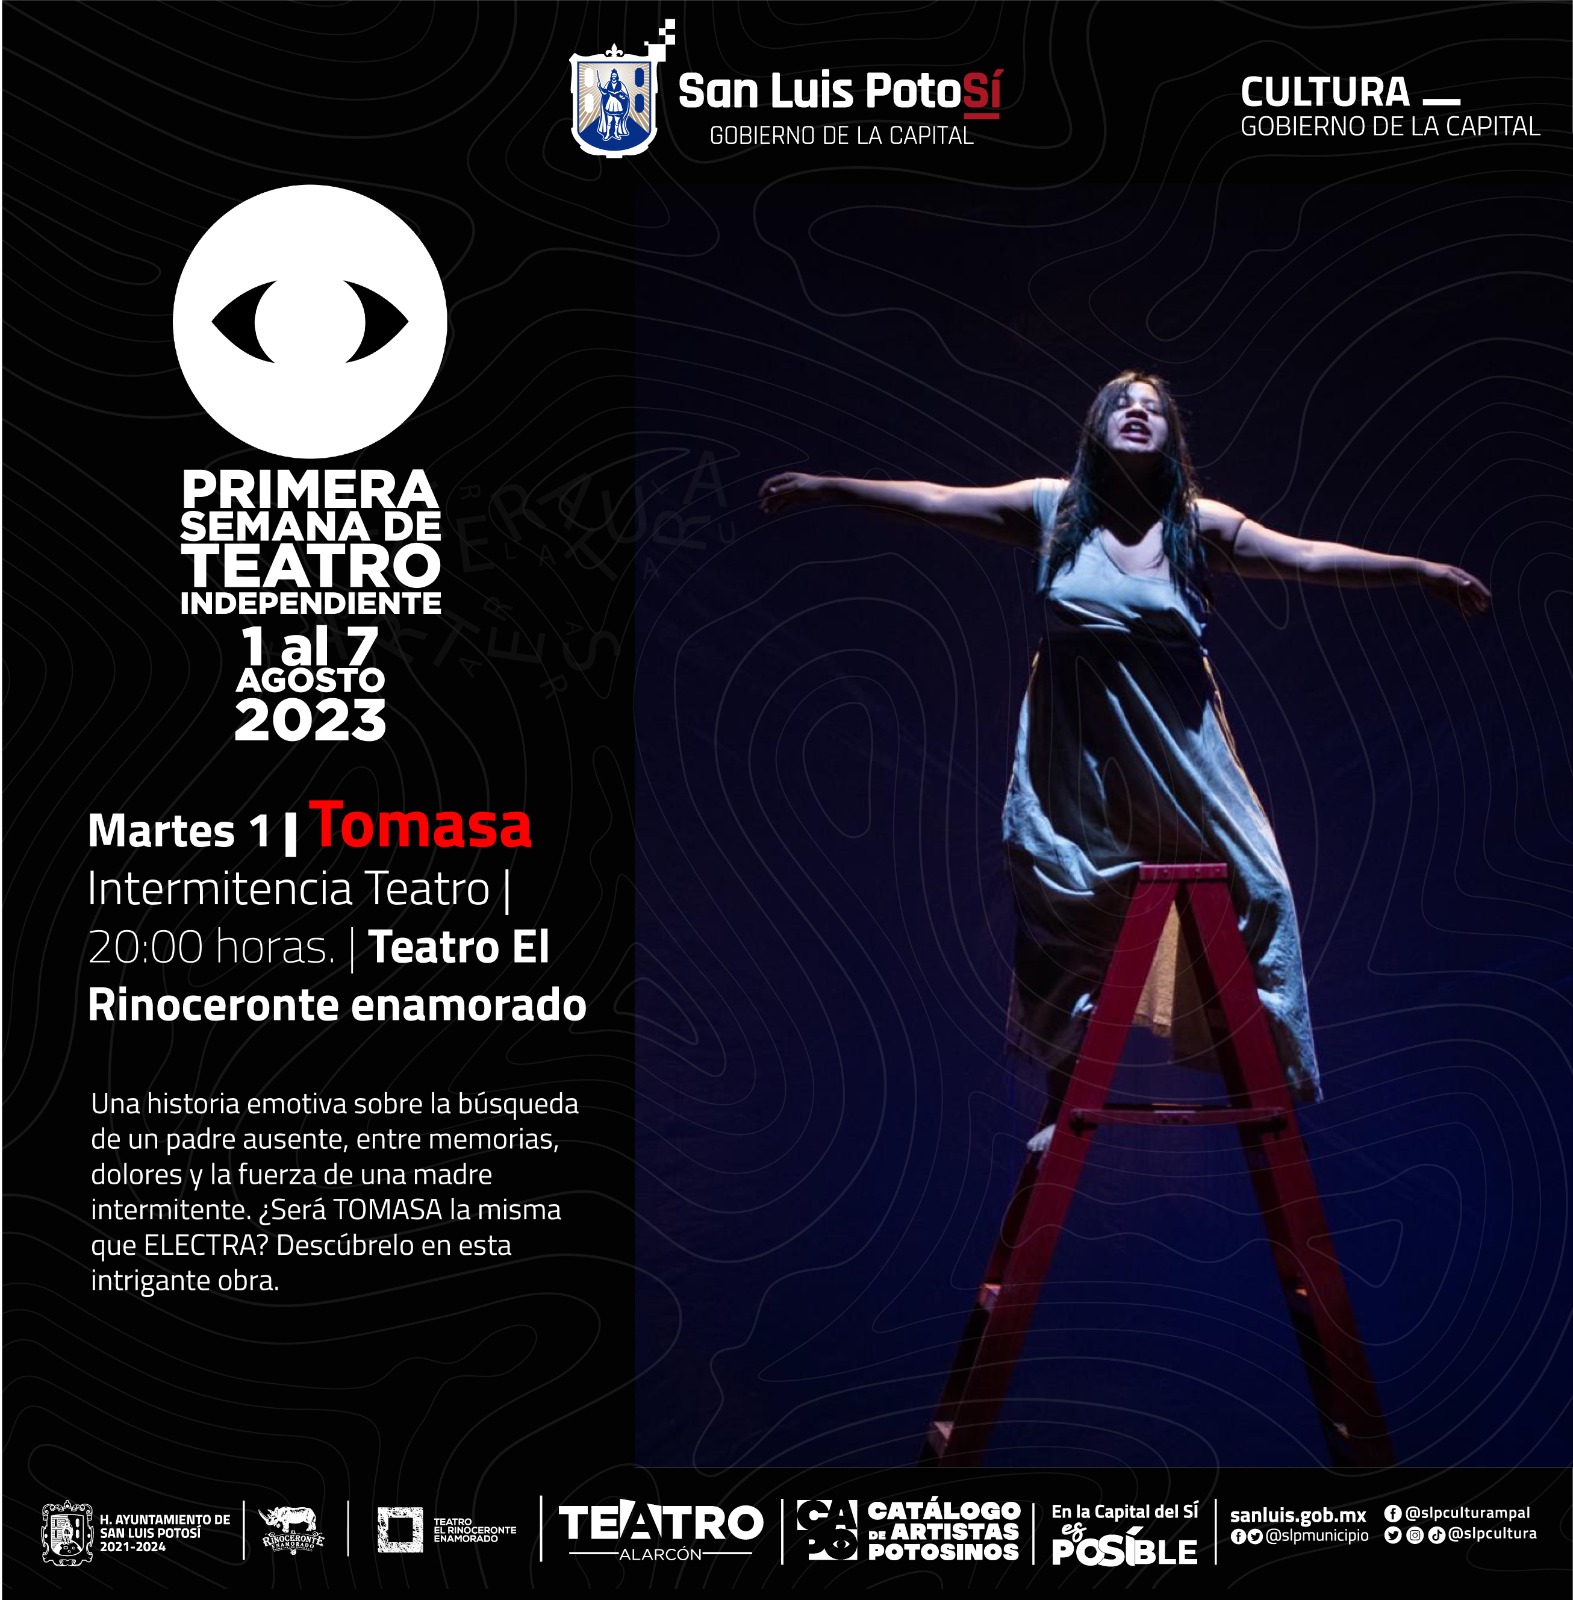 Del 1 al 7 de agosto se realizará la semana de teatro independiente con artistas del Catálogo de Artistas Potosinos.